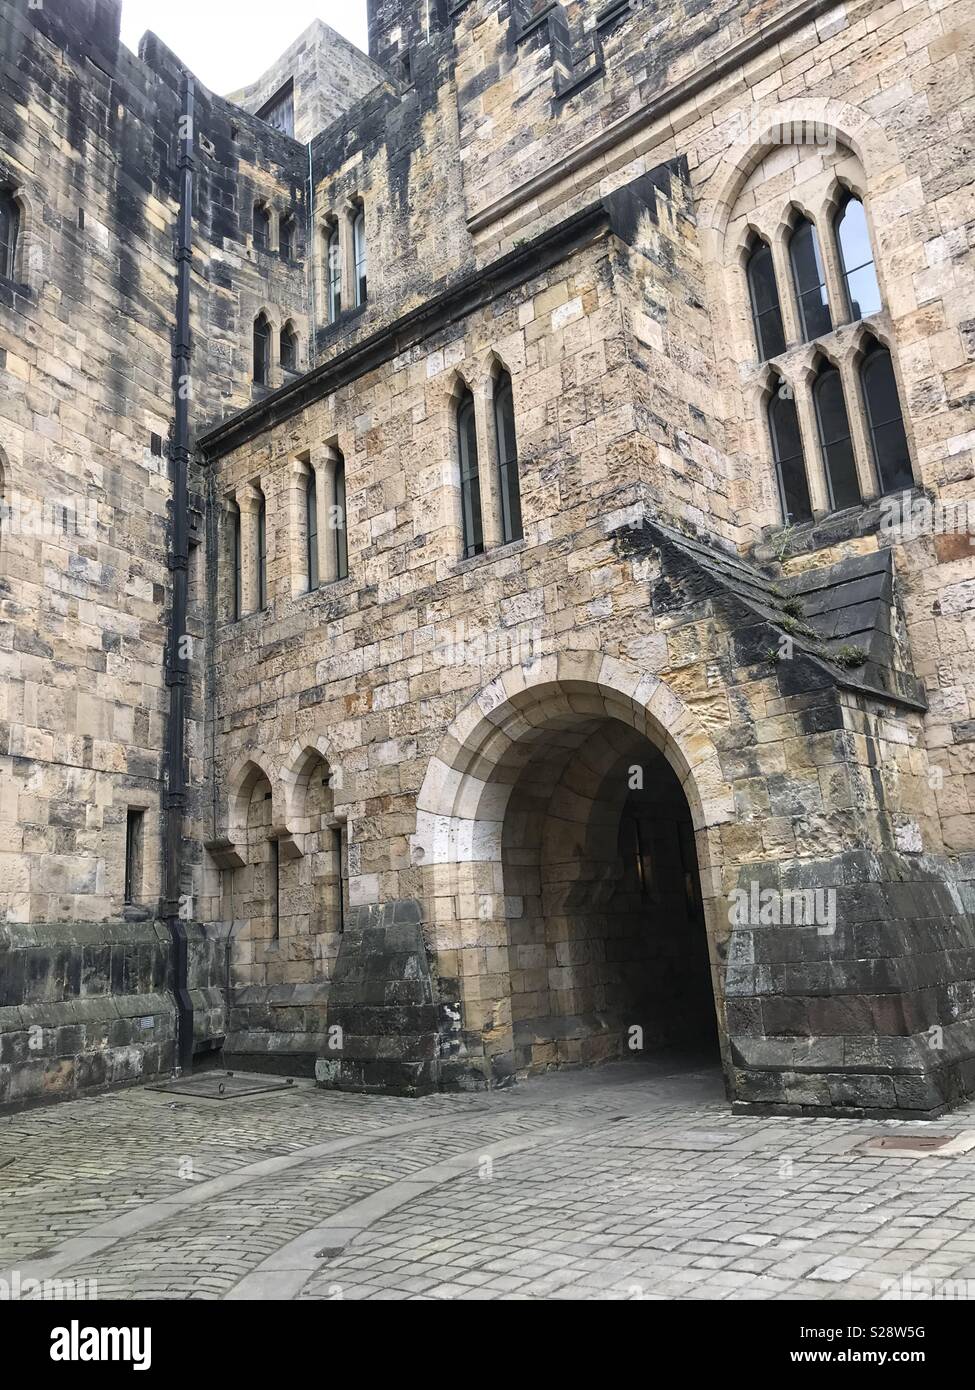 Bild der Hof von einer Burg in Schottland. Wurde das Schloss, wo die  Quidditch vom Erfolg Film Harry Potter gefilmt wurde Stockfotografie - Alamy